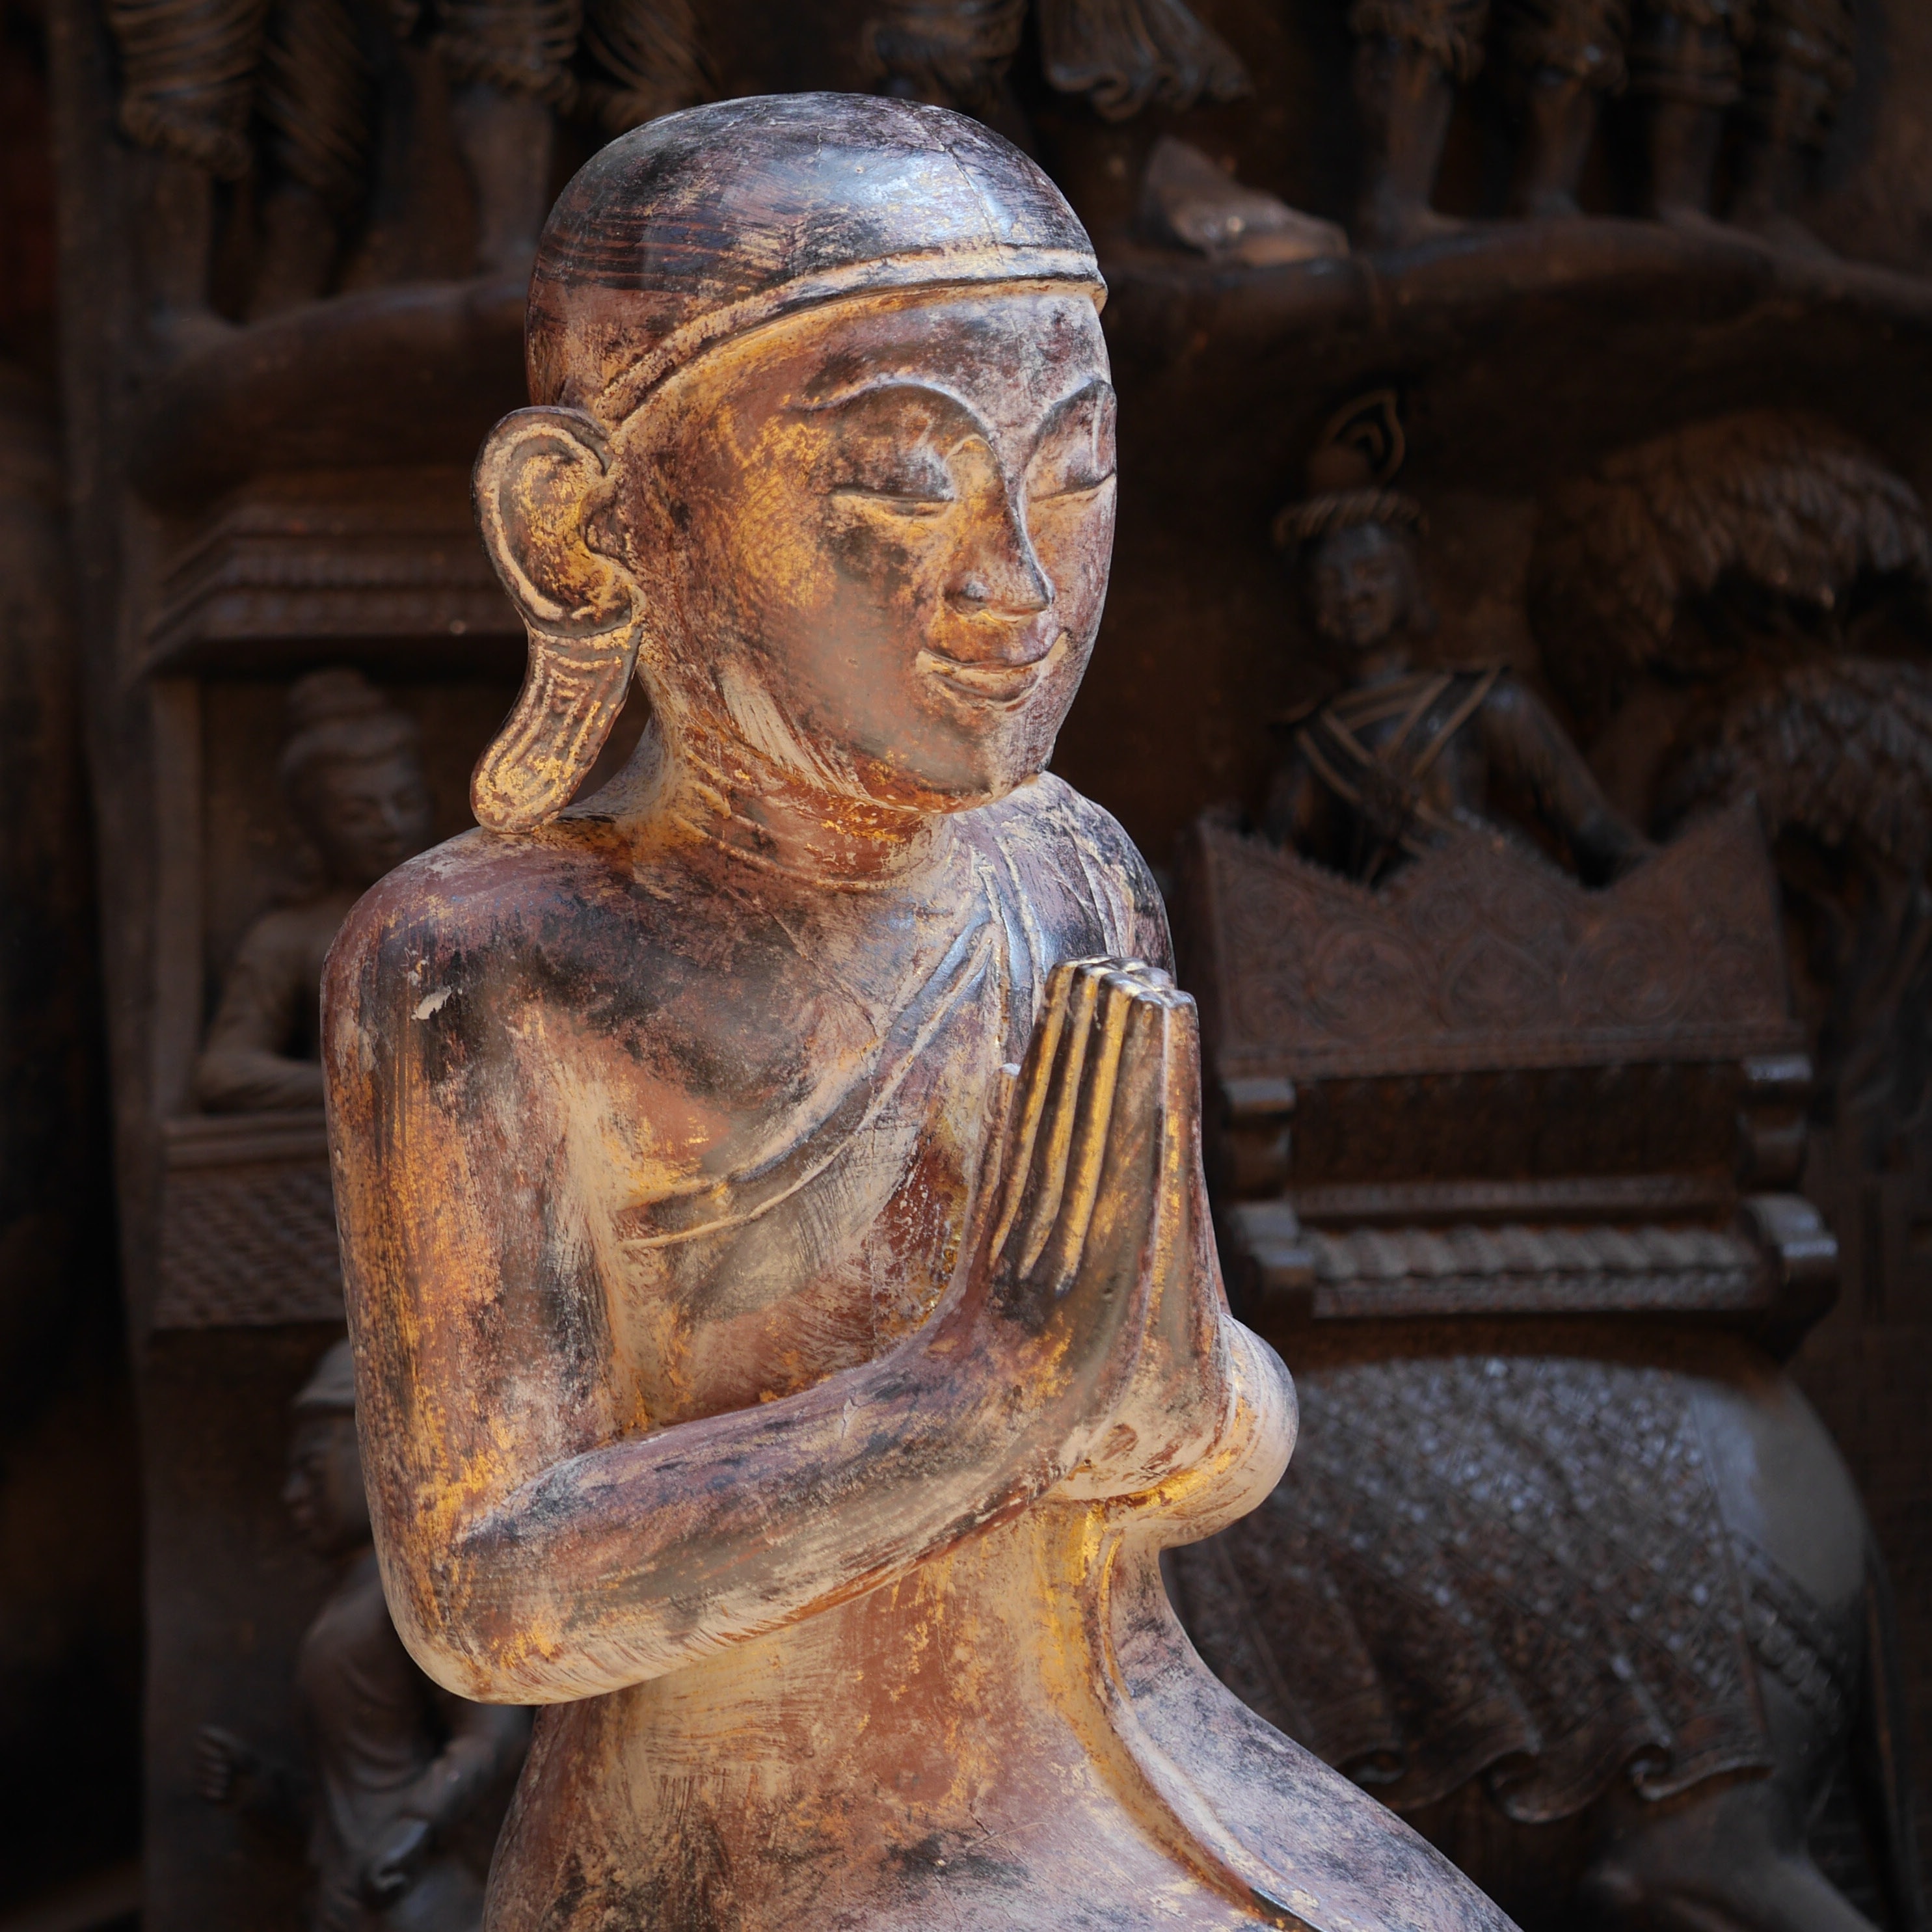 brown wooden Buddhist religious sculpture